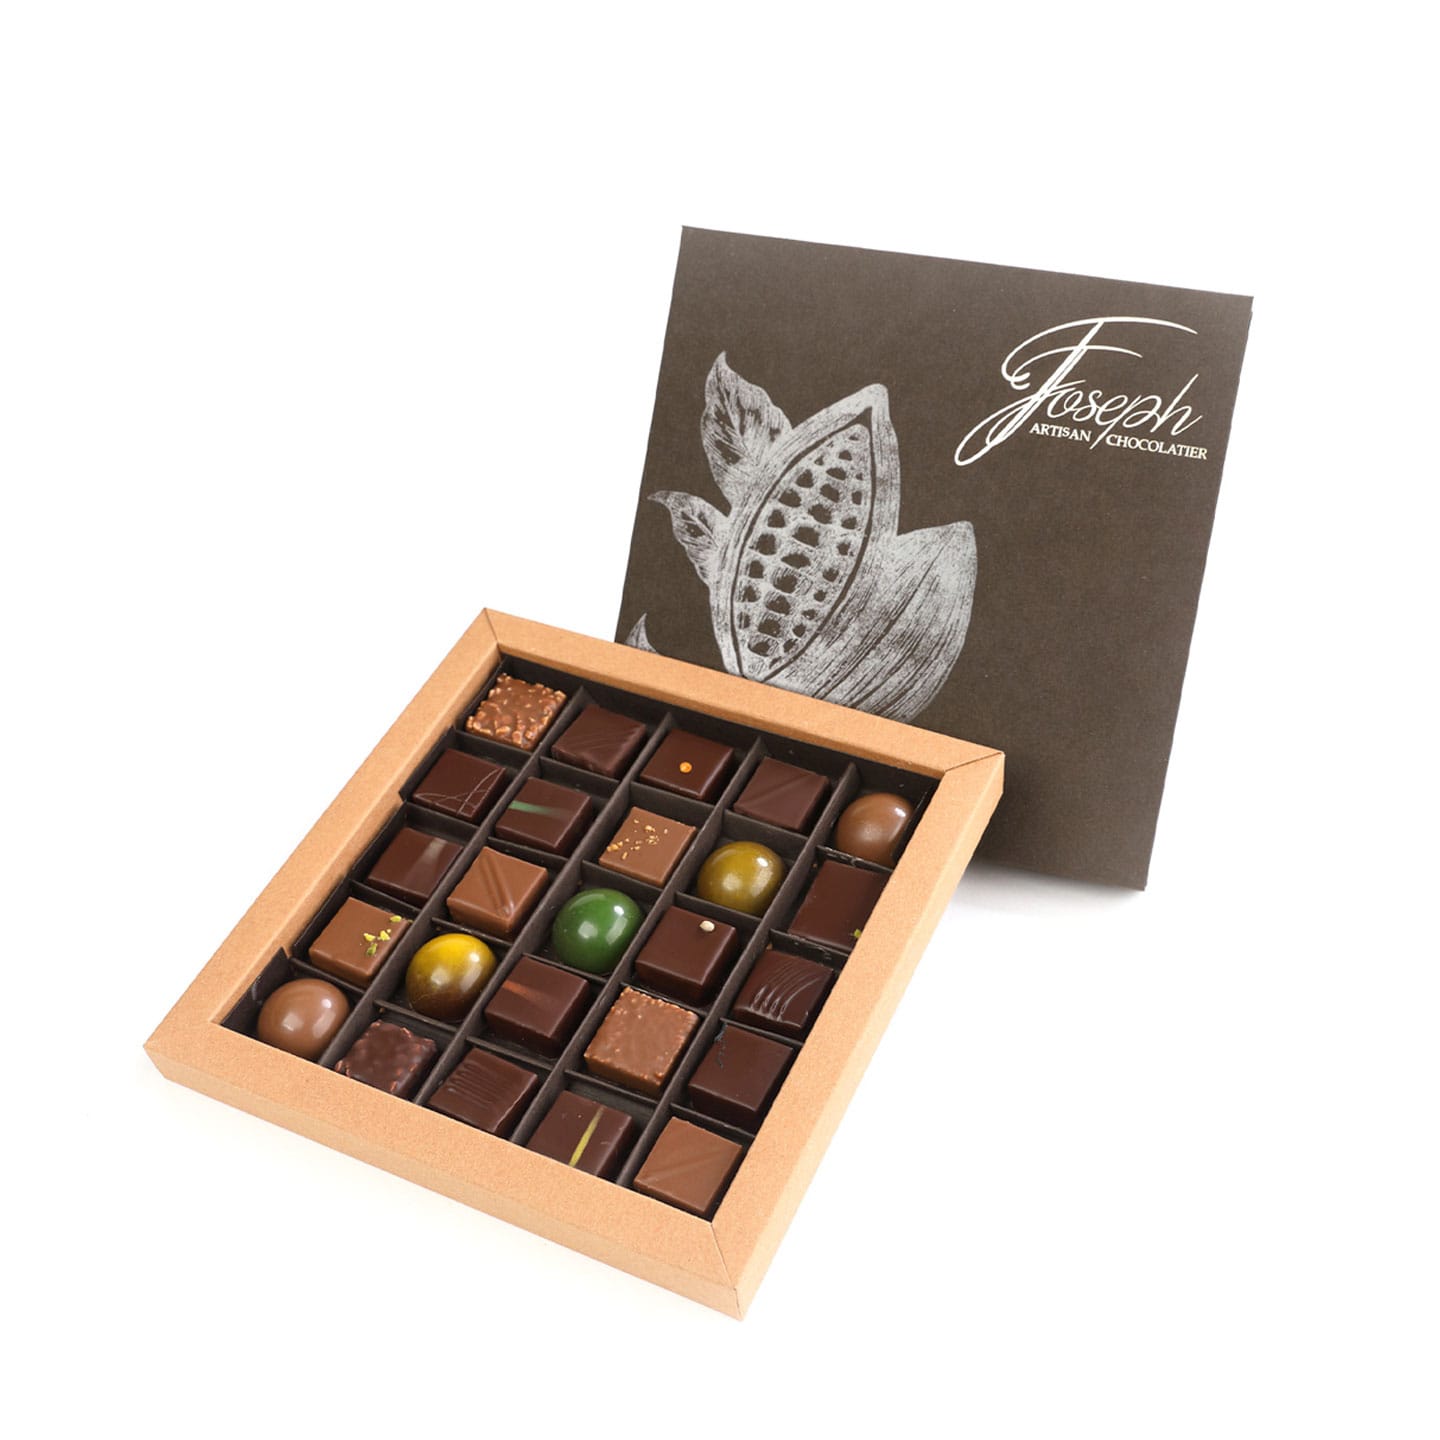 Joseph • Assortiment Chocolats Noir et Lait 200g - 25 pièces